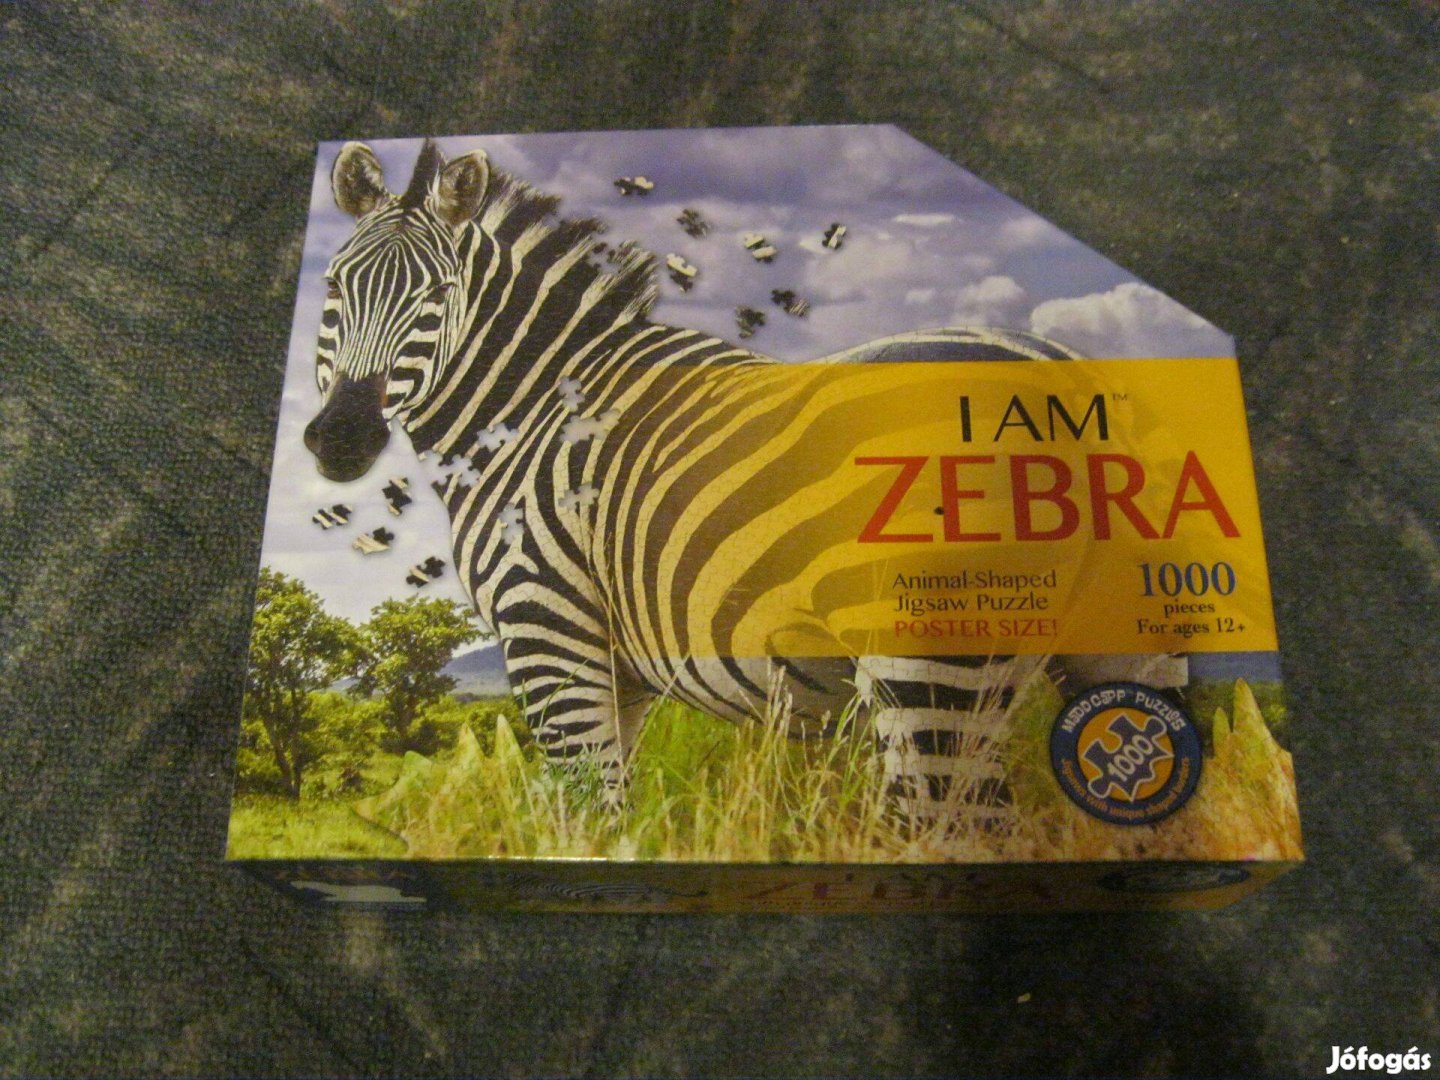 Zebra formájú 1000 db-os puzzle